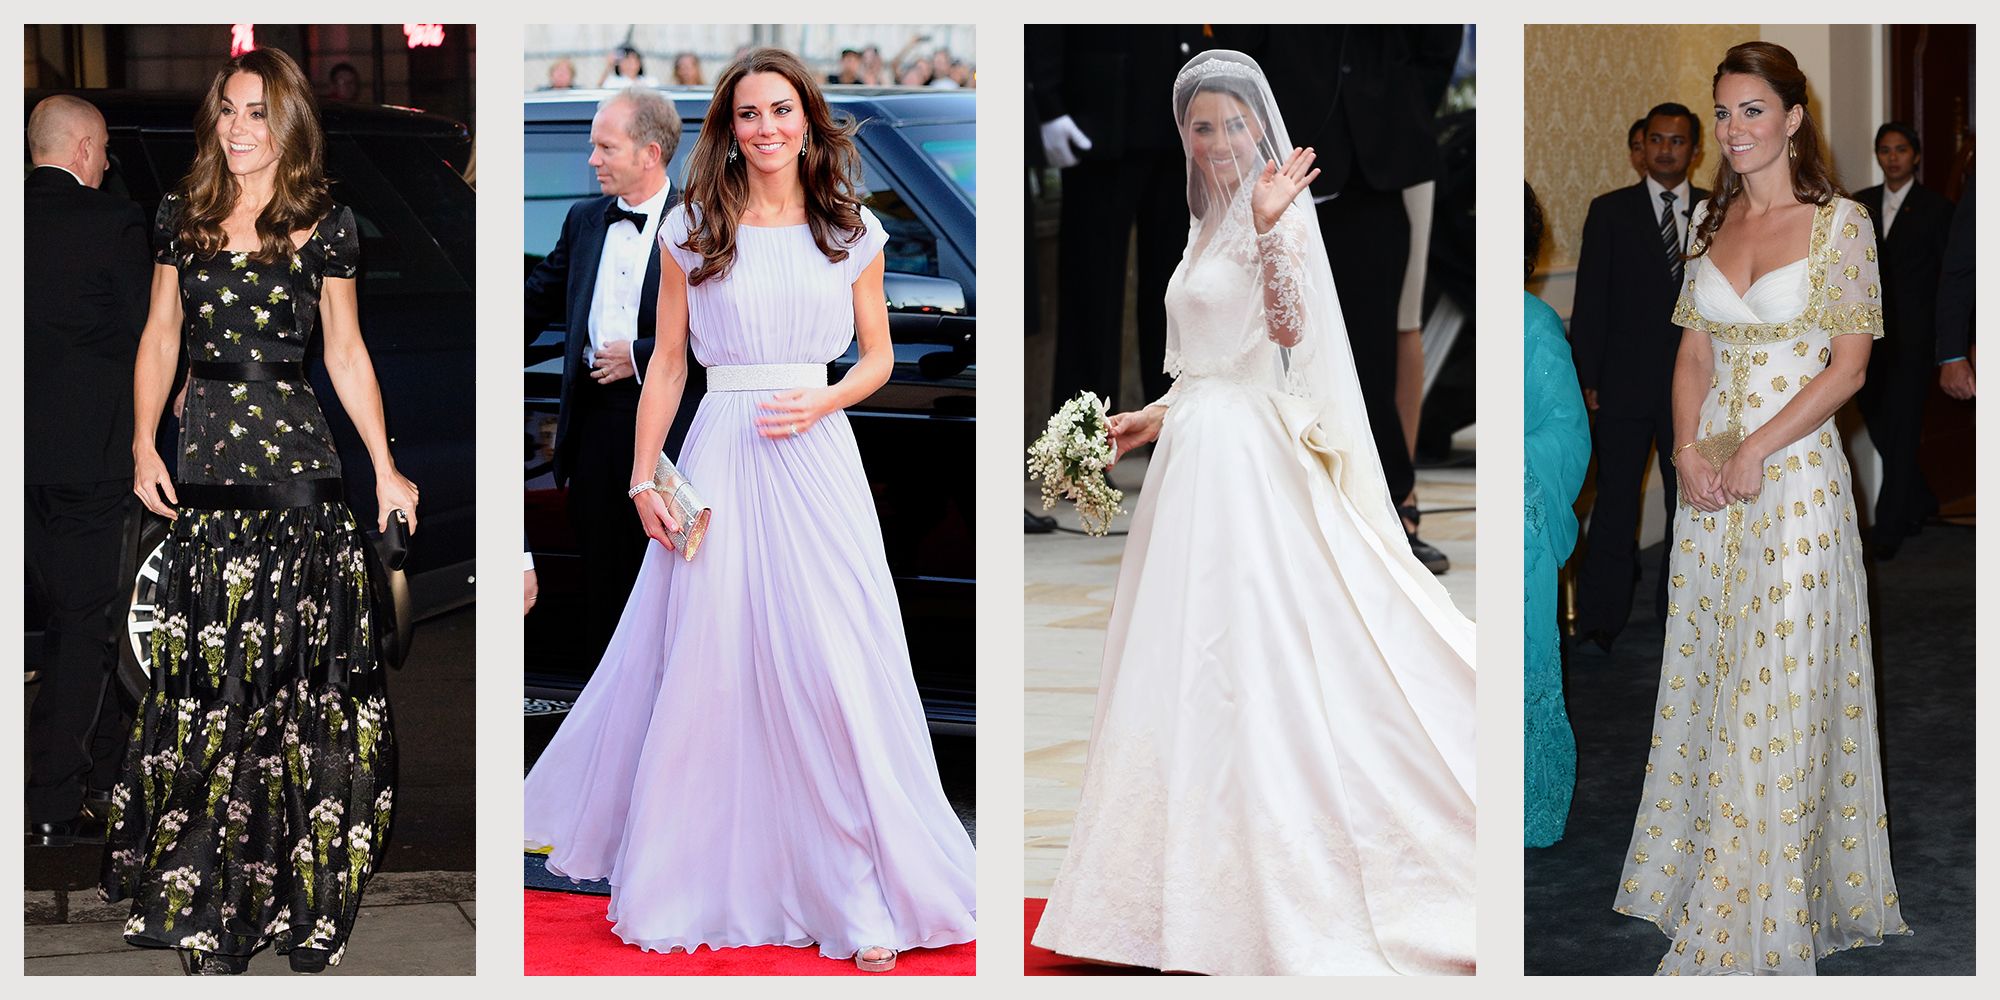 Kate Middleton wedding dress, up-close